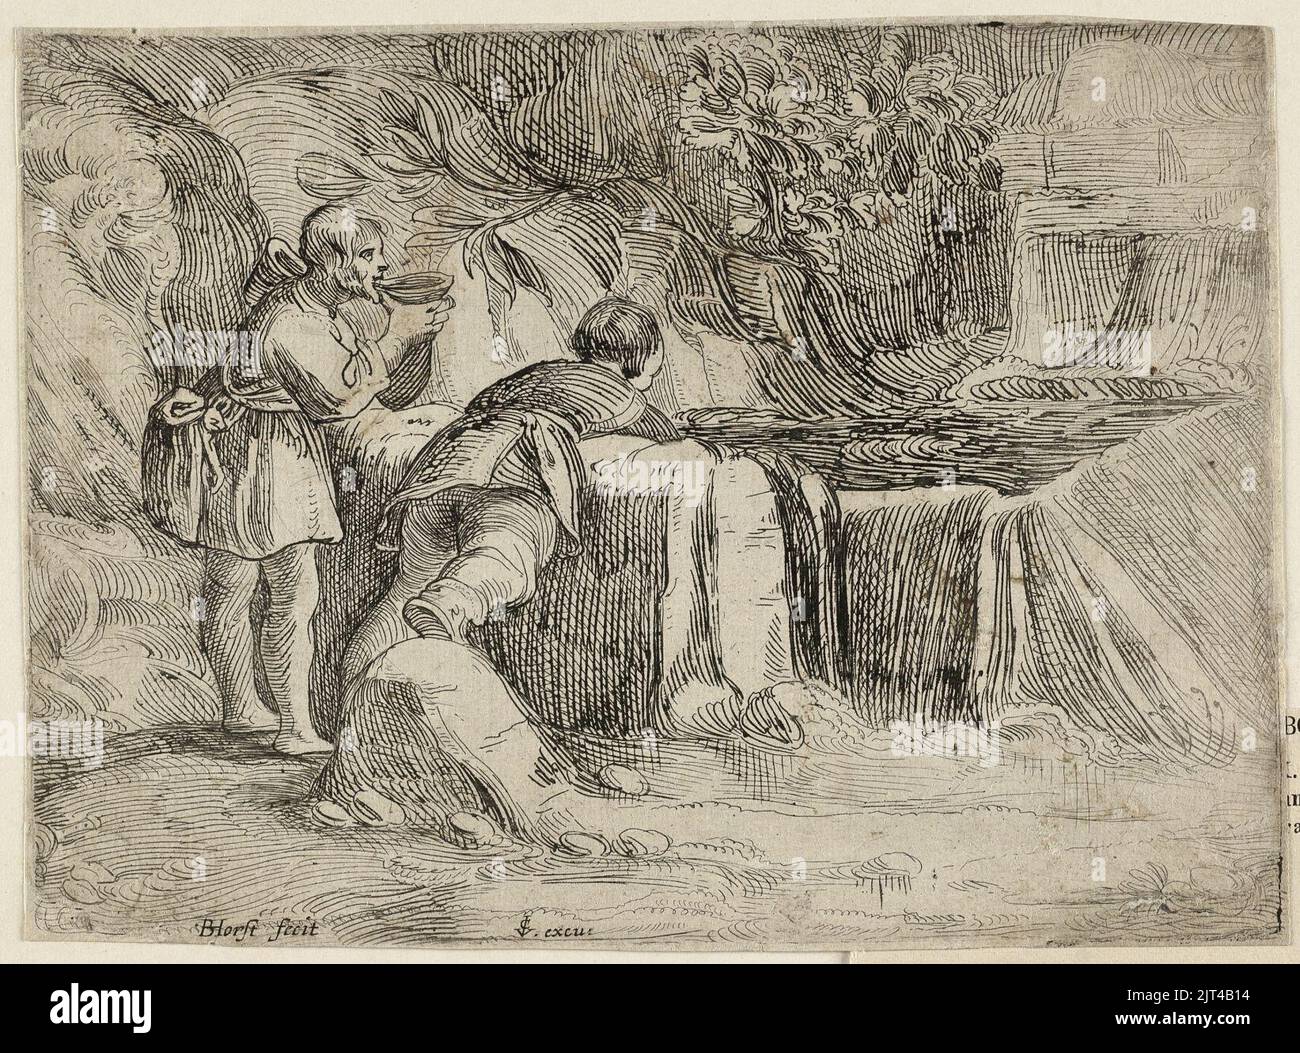 Twee mannen bij een bron in de rotsen. De een drinkt uit een nap, de ander, op de rug gezien, buigt zich voorover om water te scheppen uit de bron. Stock Photo